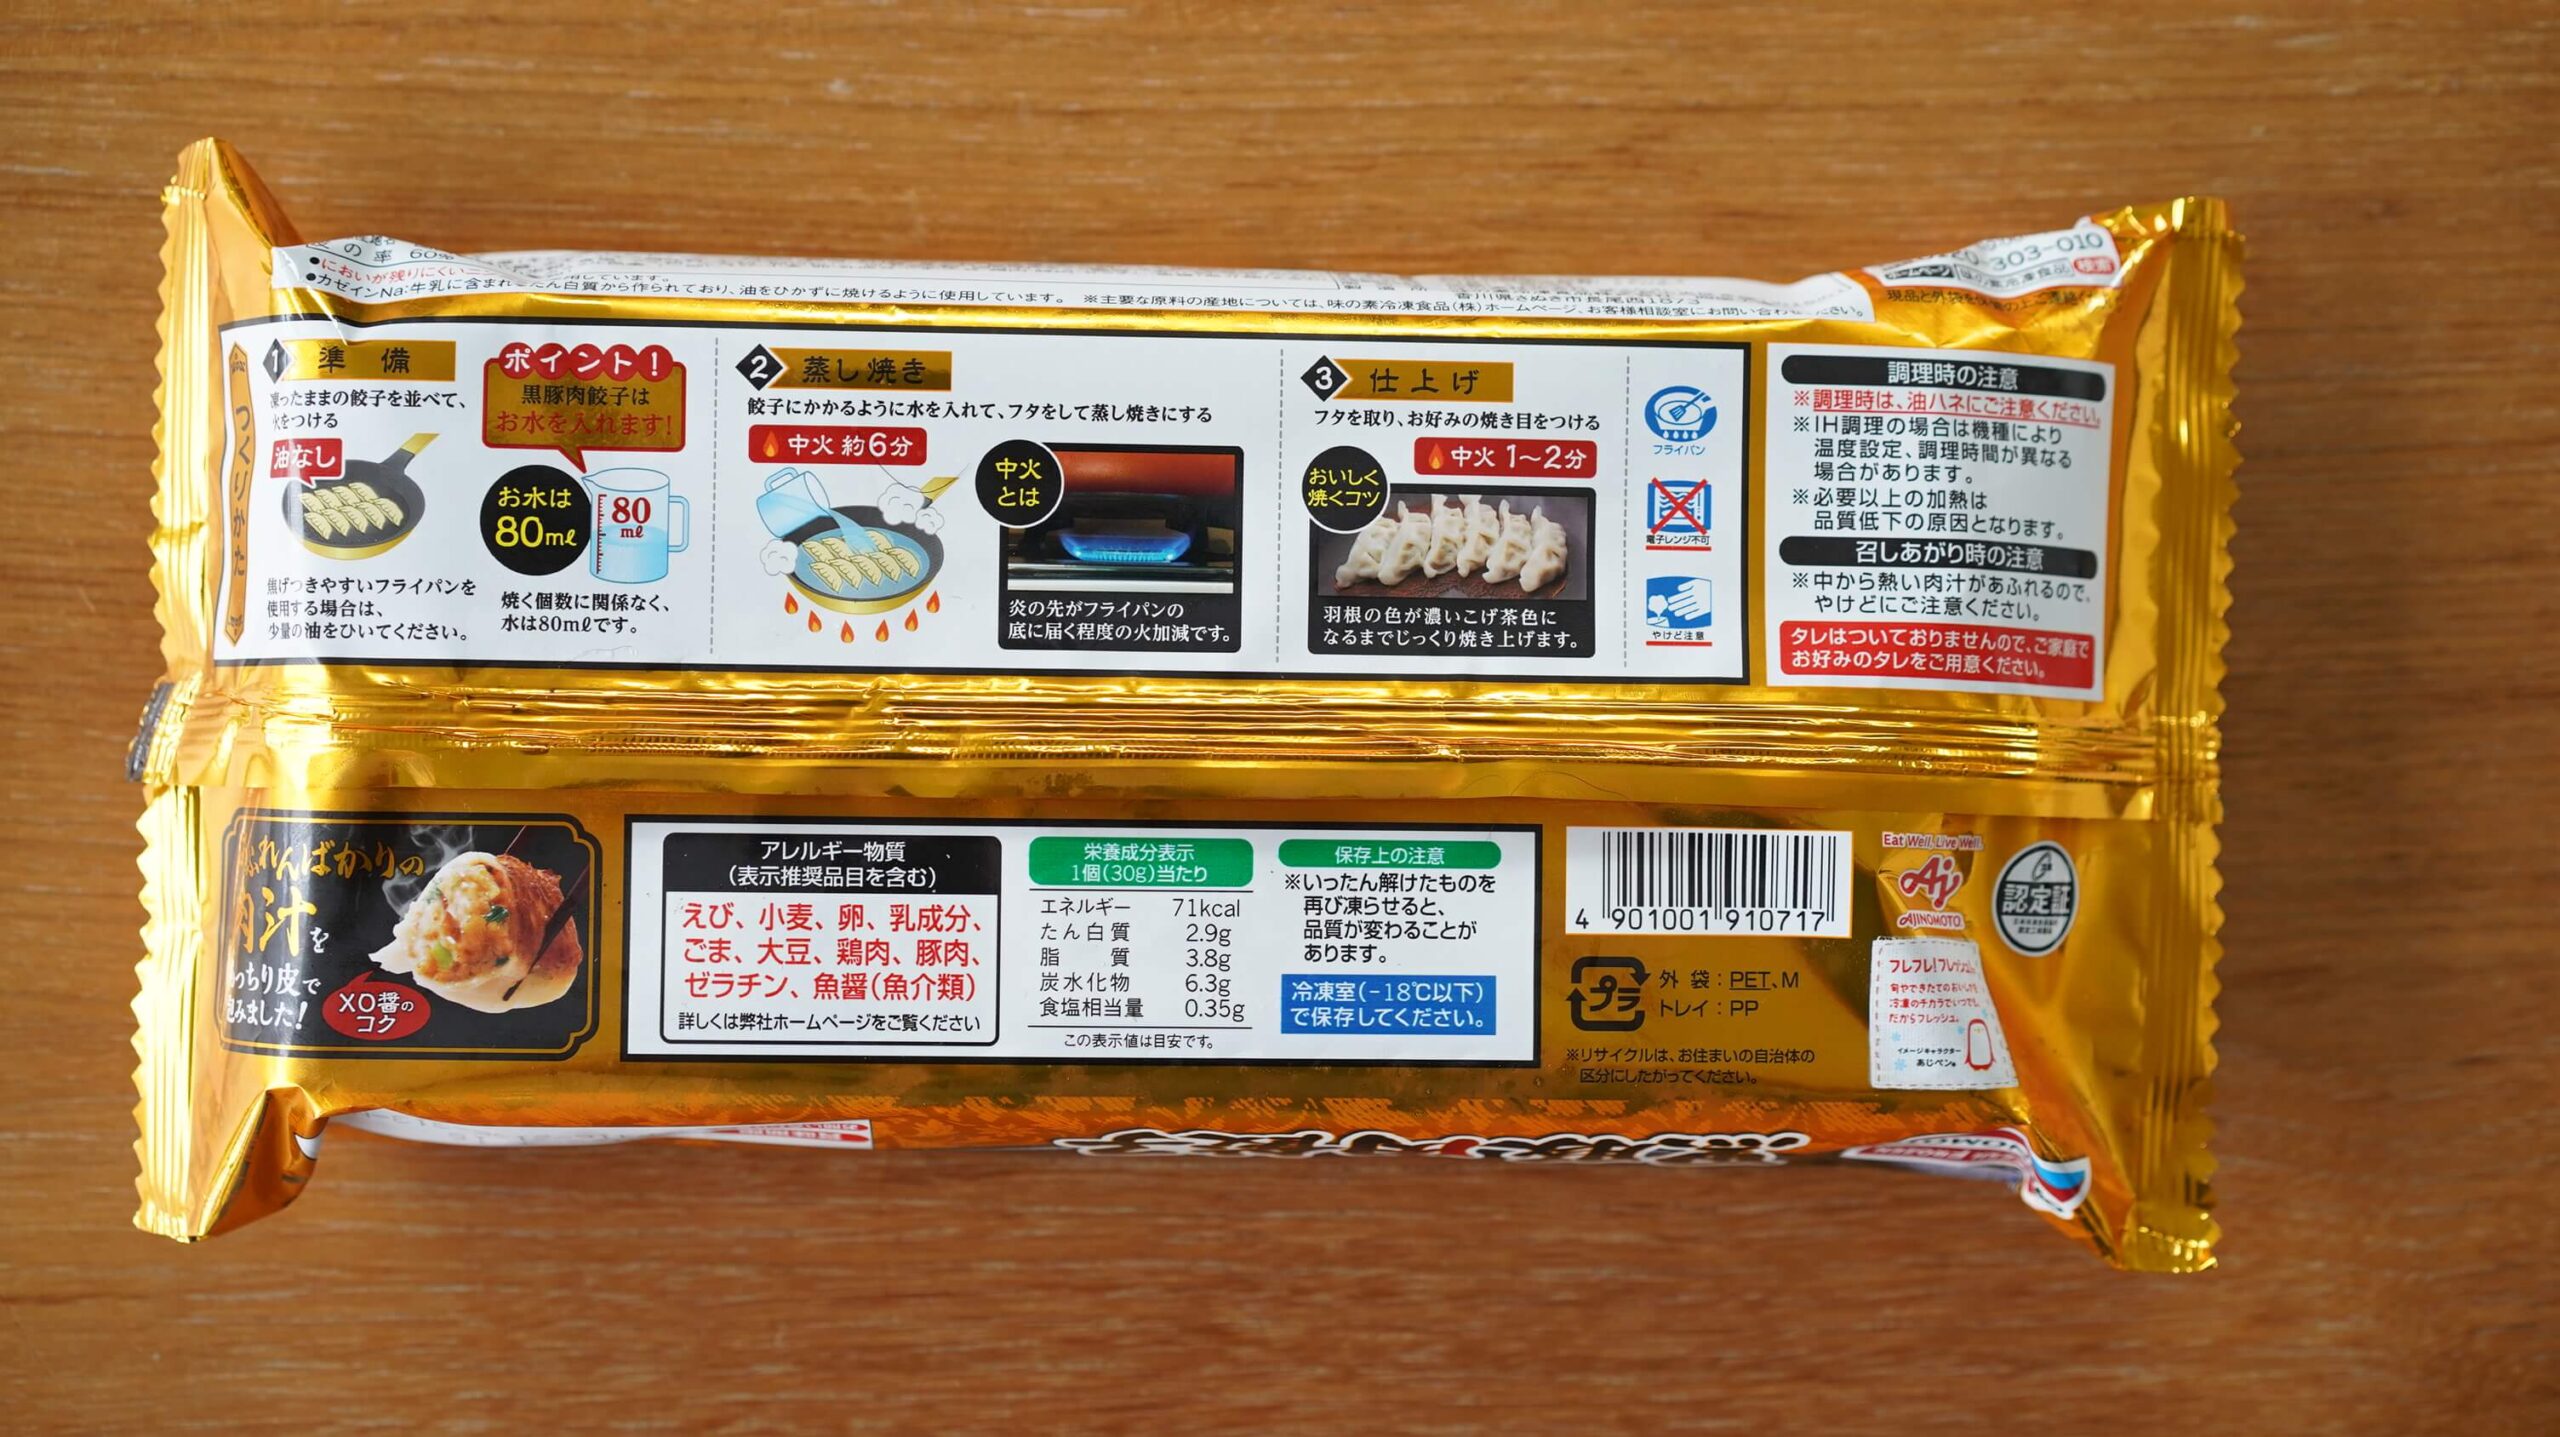 味の素の冷凍食品「黒豚肉餃子」のパッケージ裏面の写真